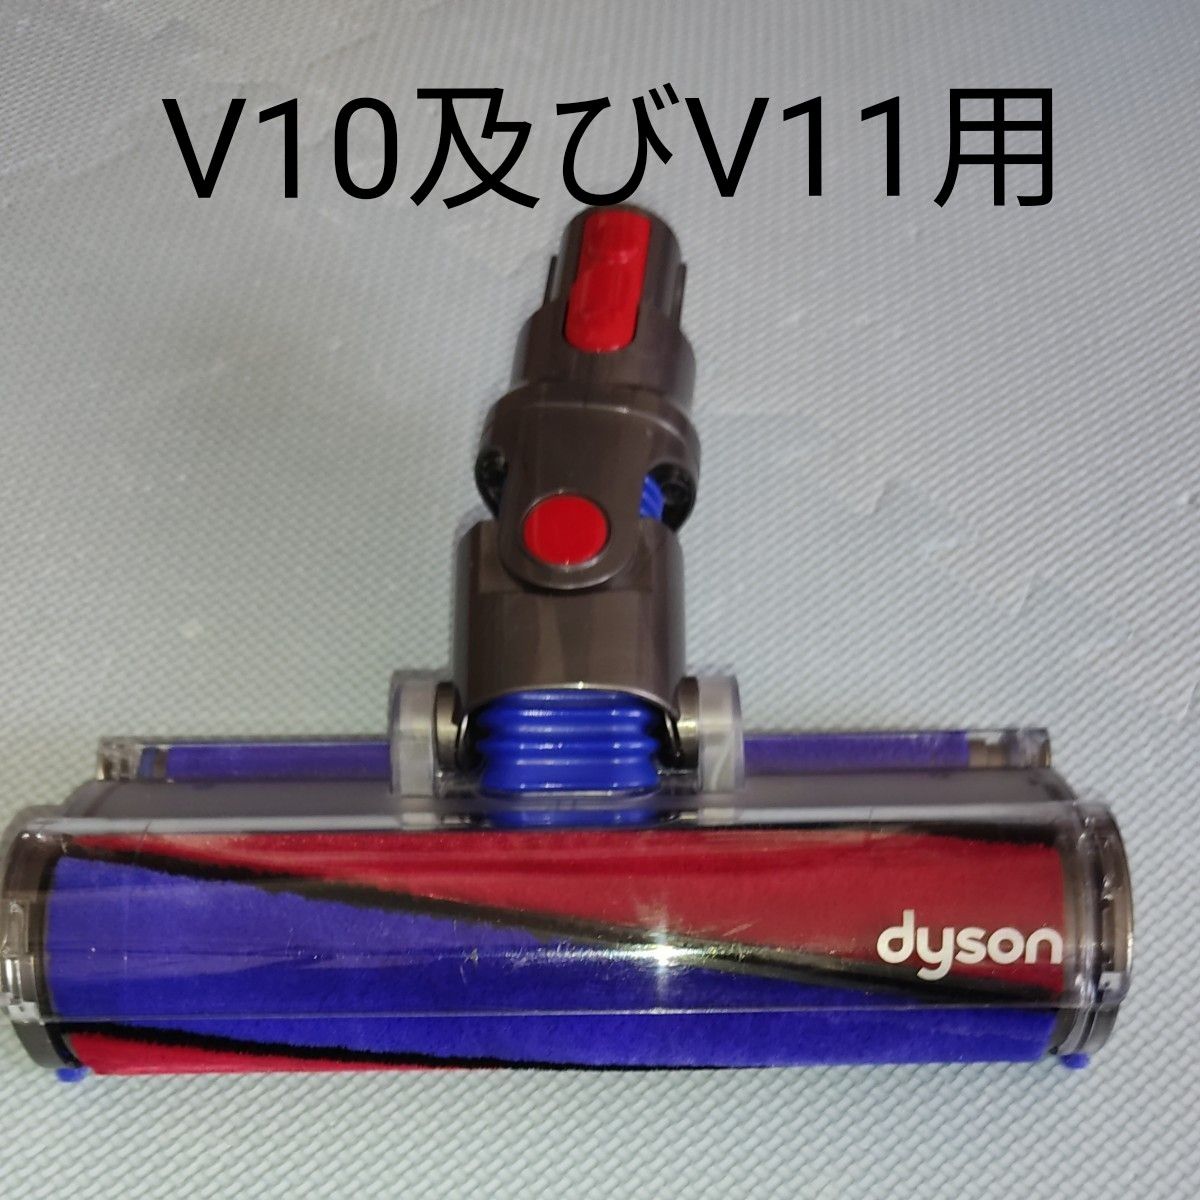 ダイソン コードレス掃除機V10及びV11用パワーソフトブラシ